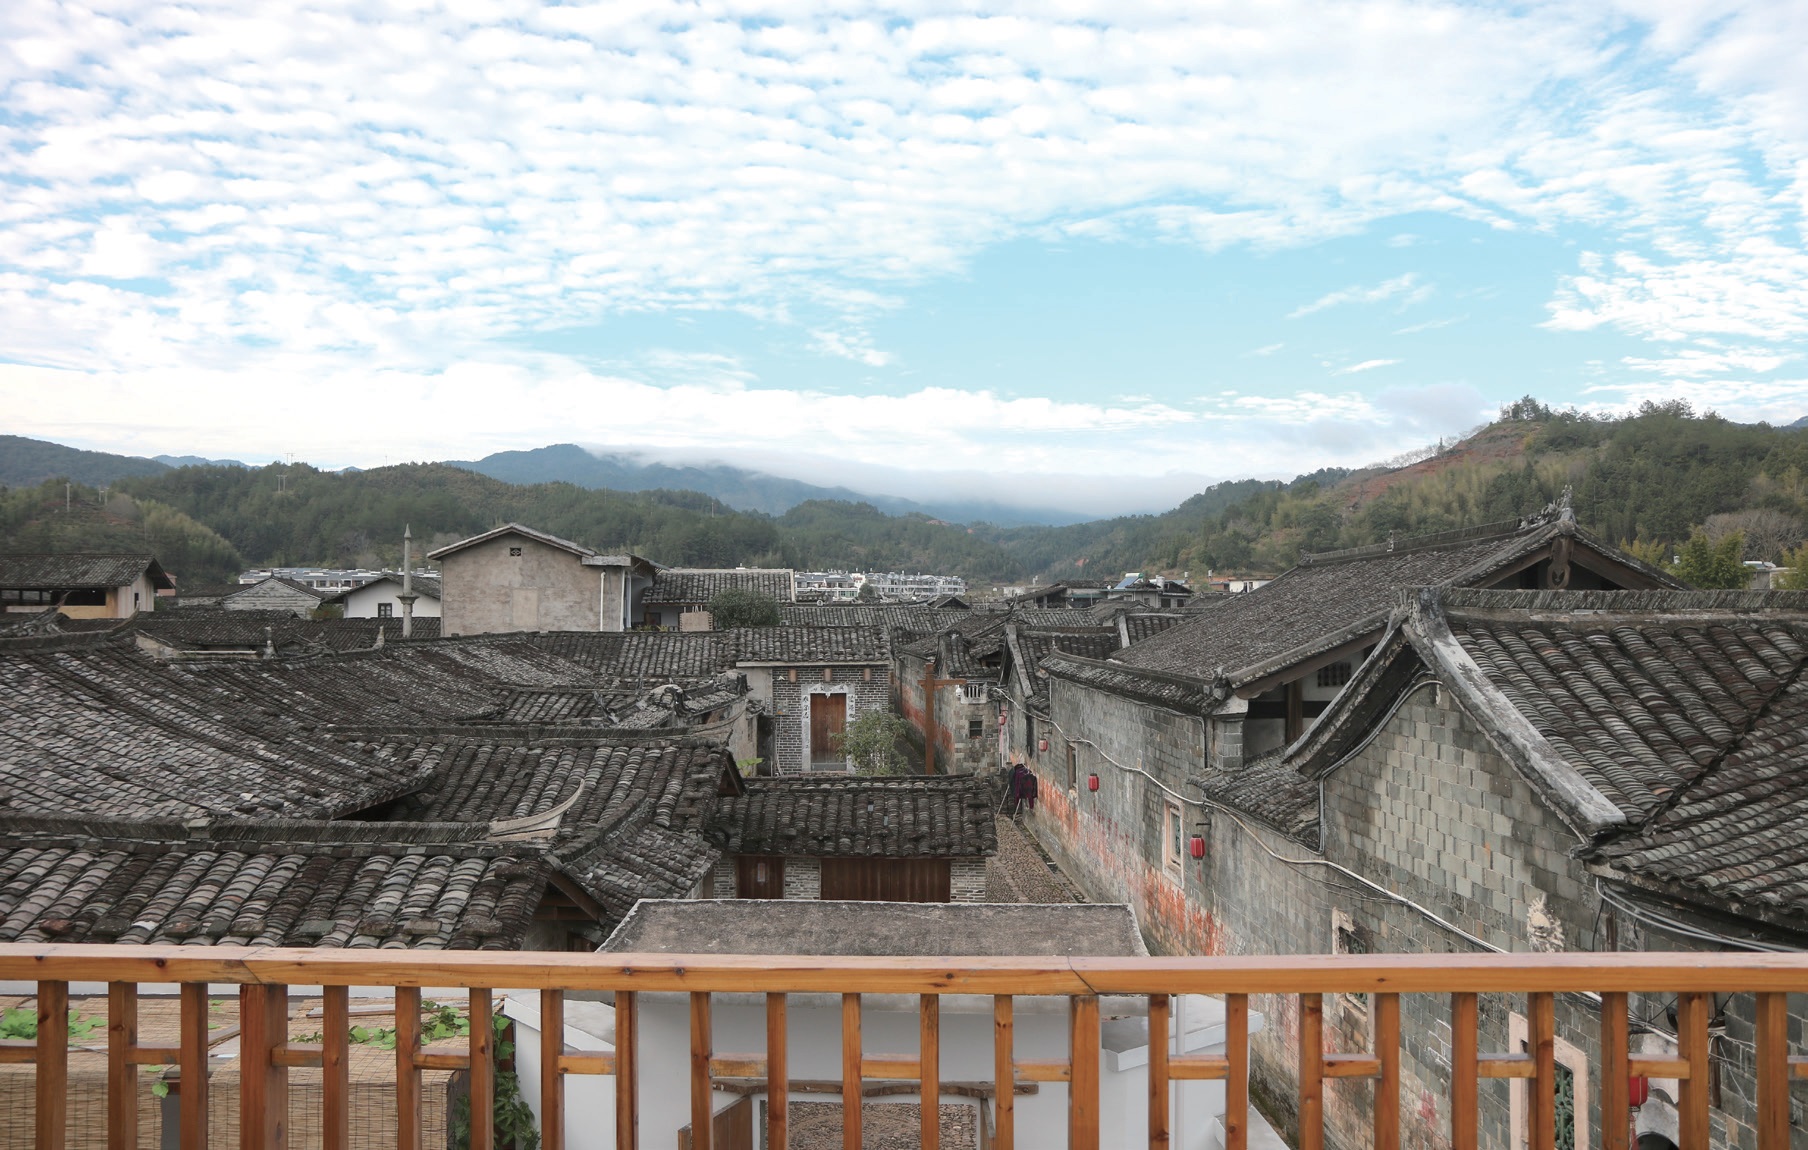 중국 푸젠성 롱옌시의 페이티엔Peitian마을. 800년 된 객가마을로 다양한 역사문화 자원을 보유하고 있다. 푸젠성 신향촌건설운동의 프로젝트 기지로 다양한 교육 및 체험사업, 마을 축제 복원의 현장이 되었다. ⓒ대산농촌재단